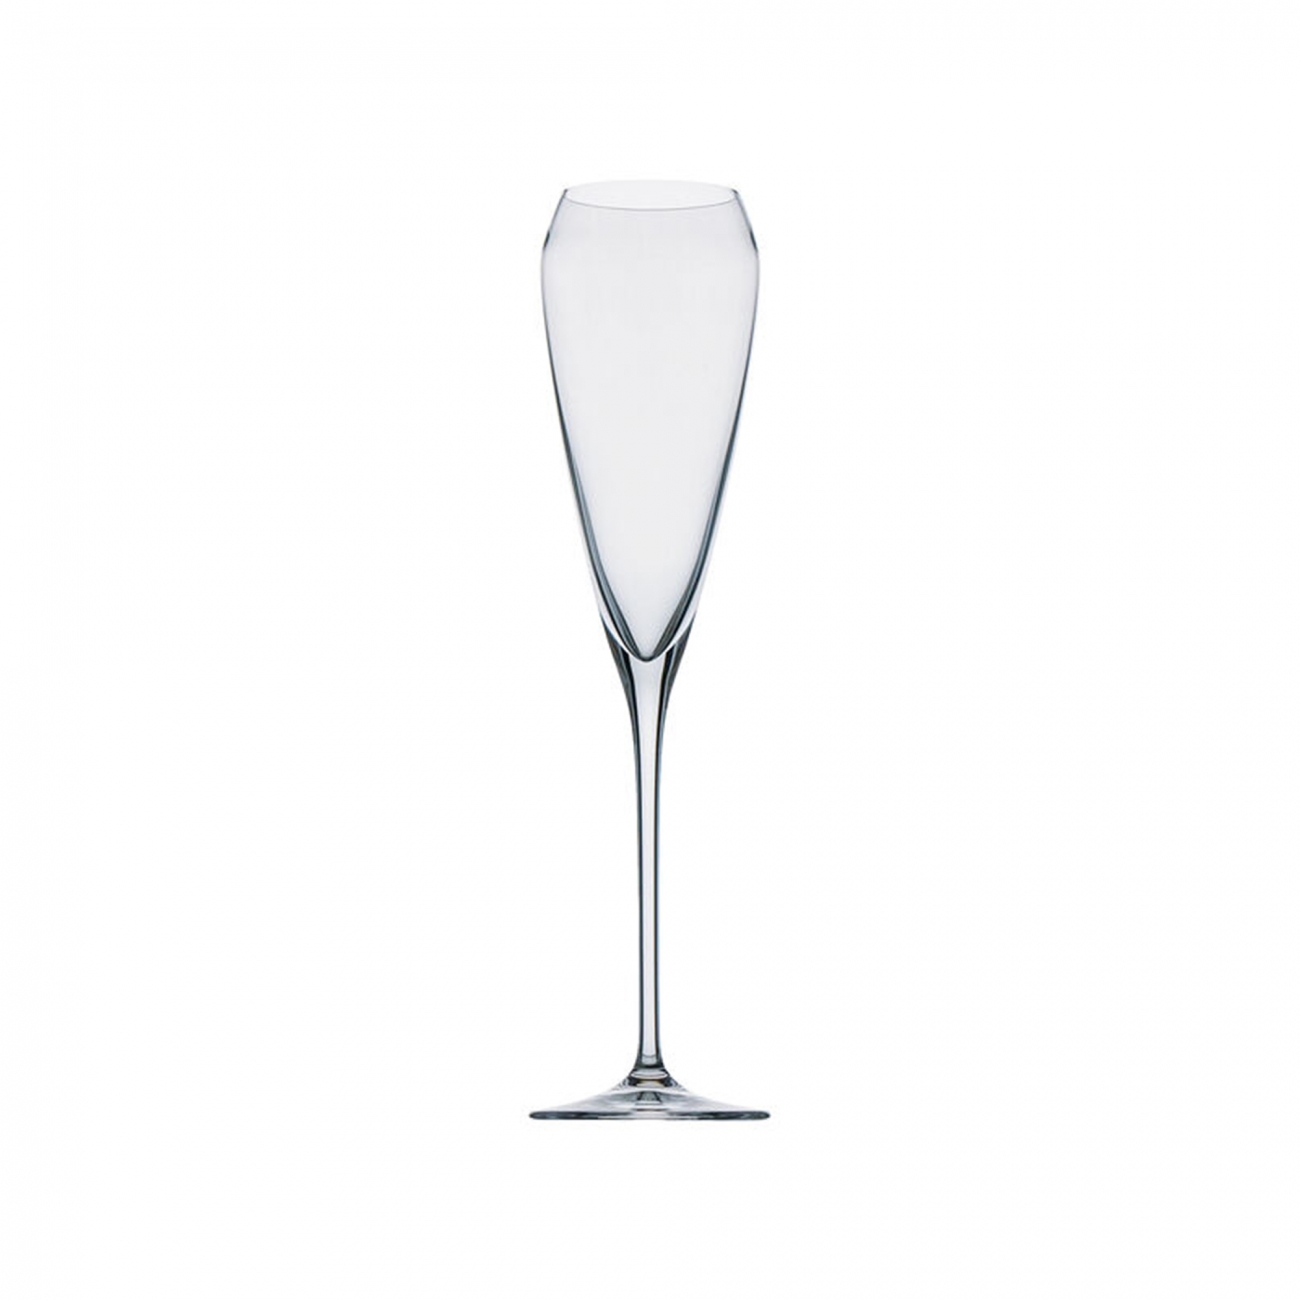 Rosenthal Tac Champagne goblet